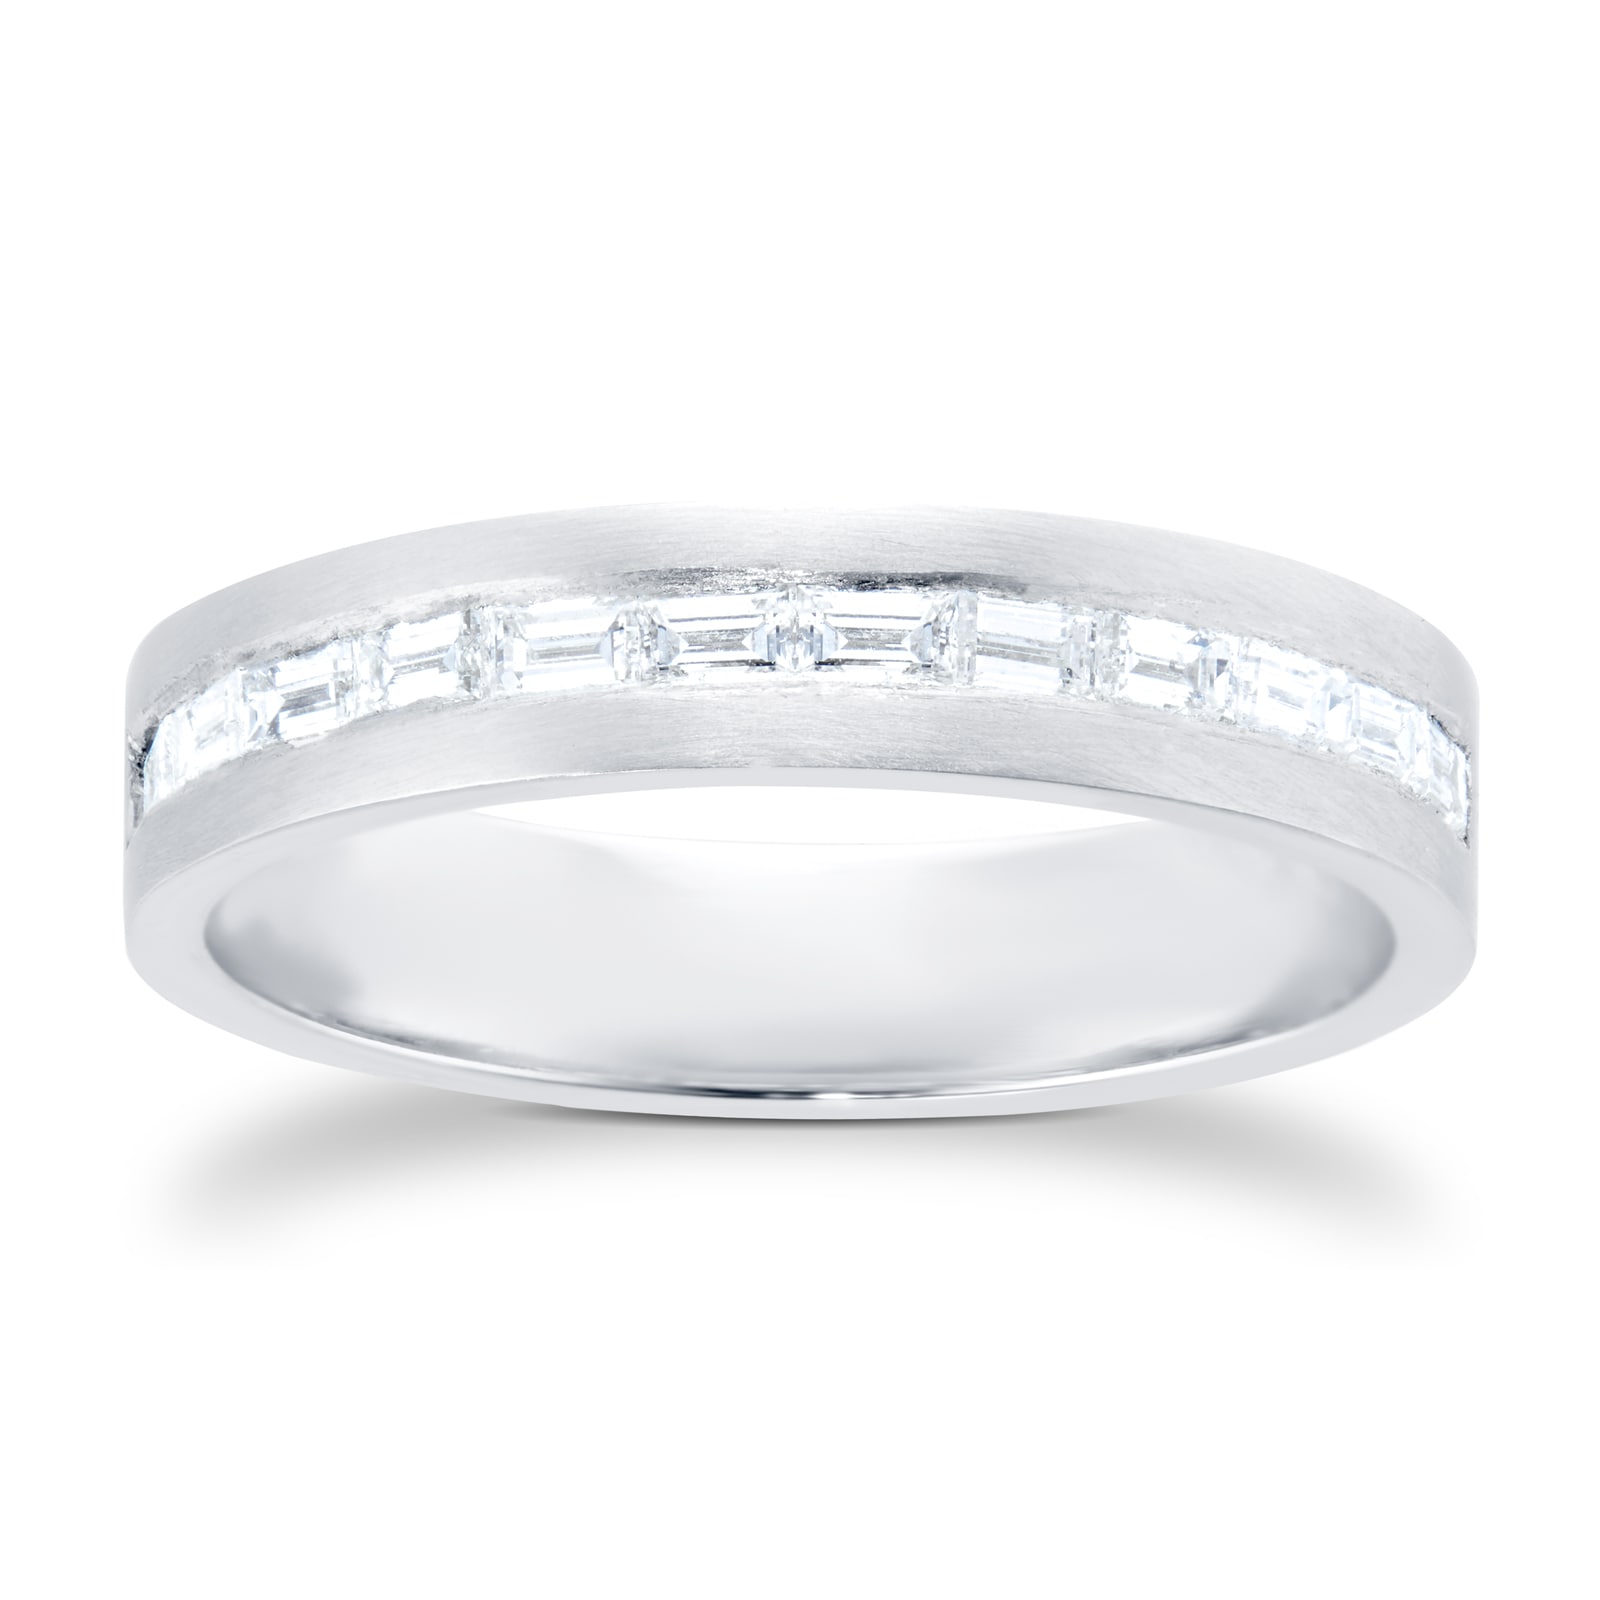 Platinum Baguette Cut Diamond Channel Set Eternity Ring - Ring Size M.5